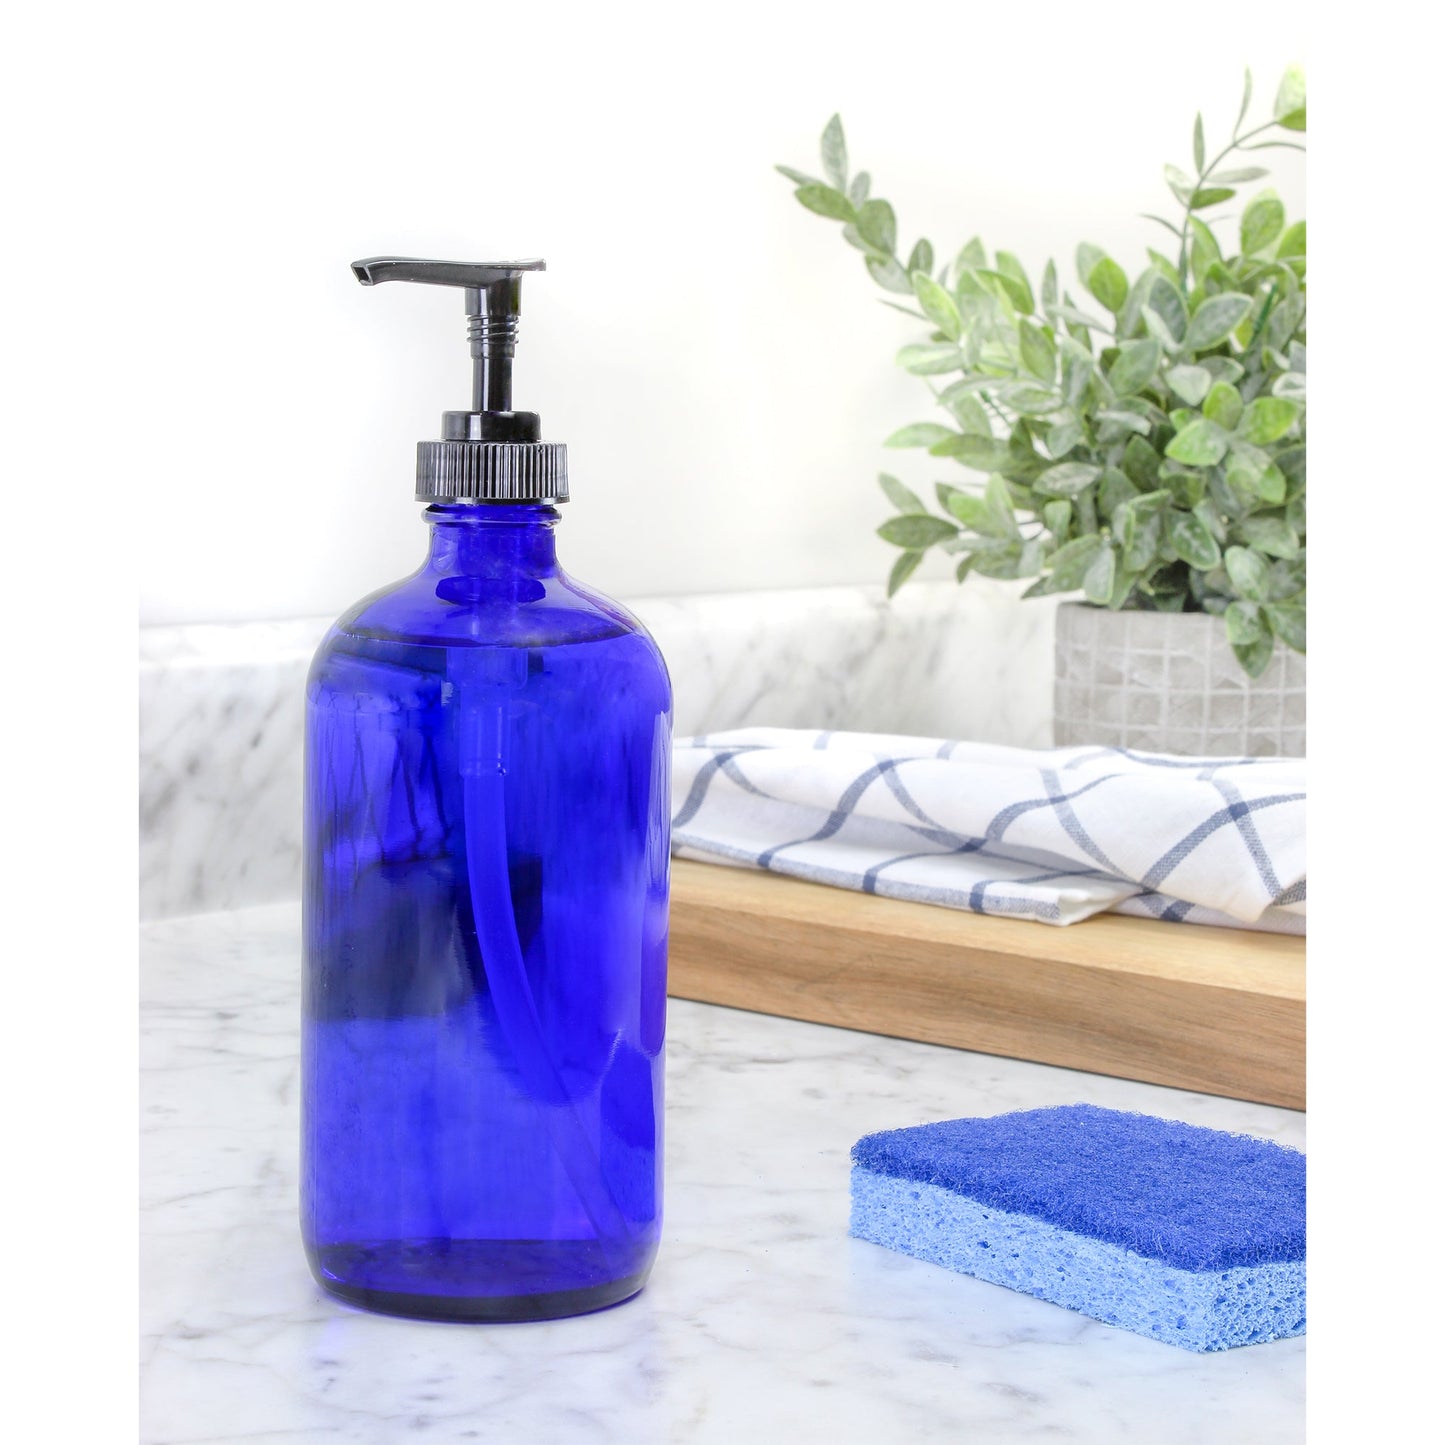 16oz Cobalt Blue Glass Bottles w/ Pump Dispensers (2-Pack) - sh1226cb0BLUE